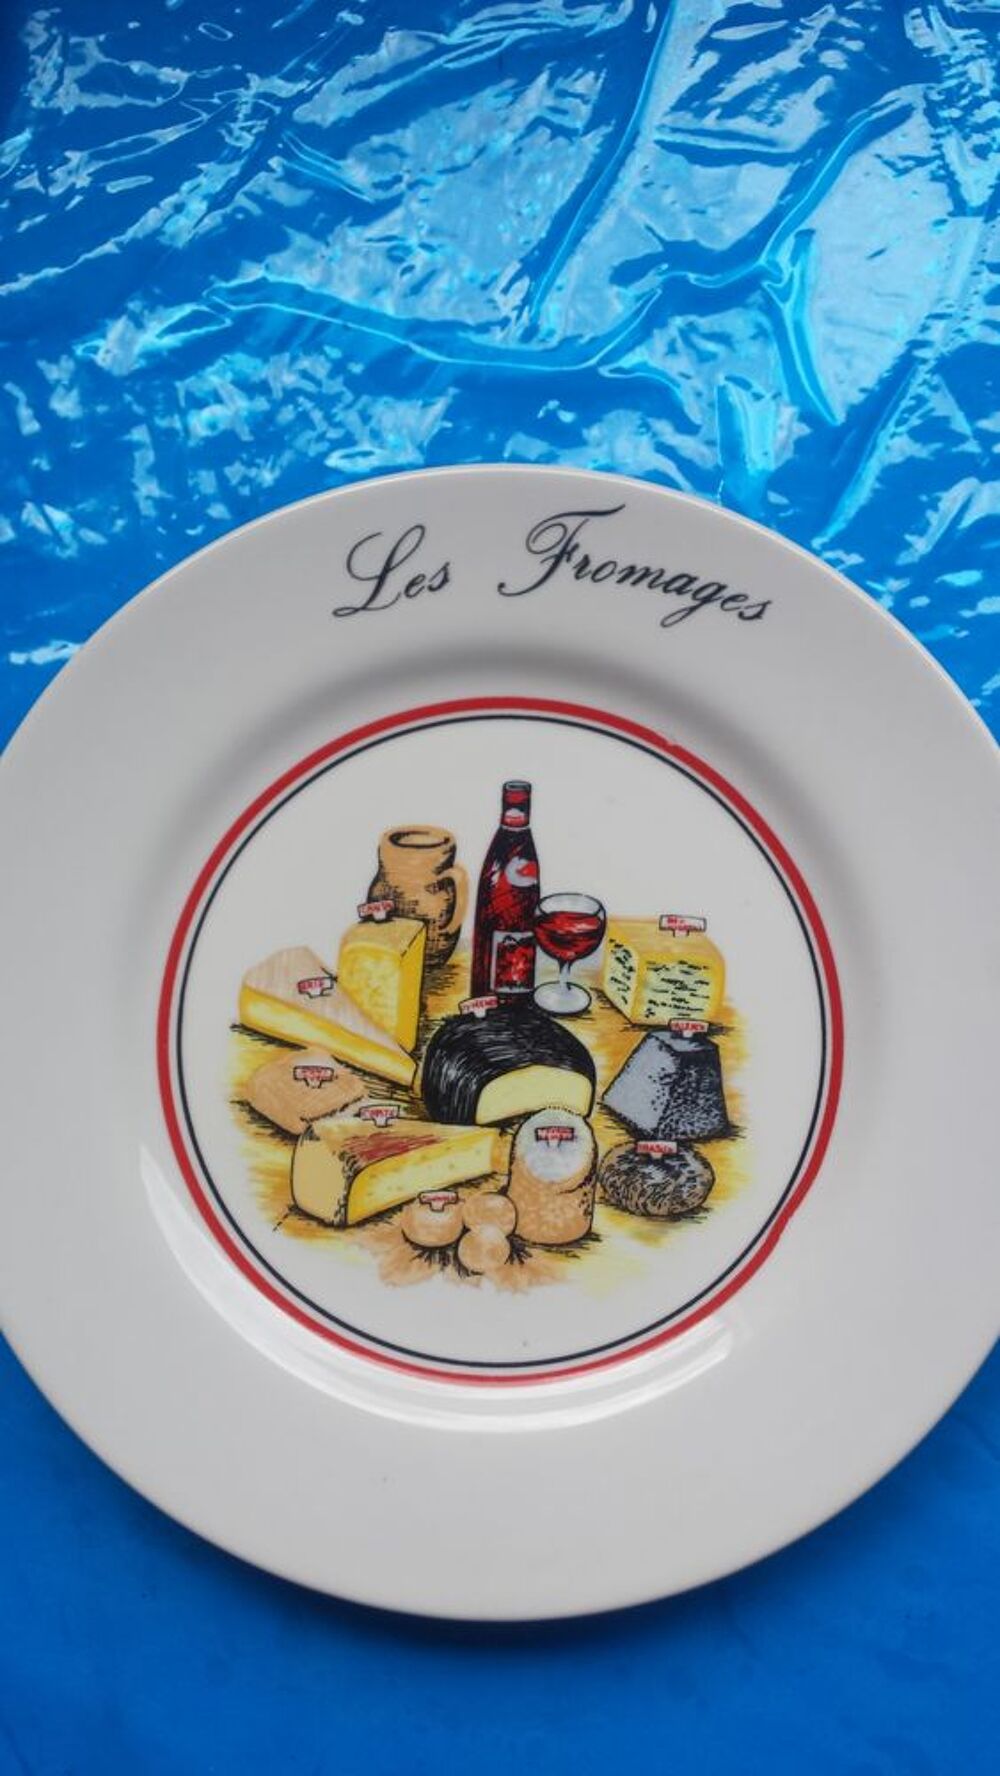 Assiettes crustac&eacute;s. fromage et fondue.
Cuisine